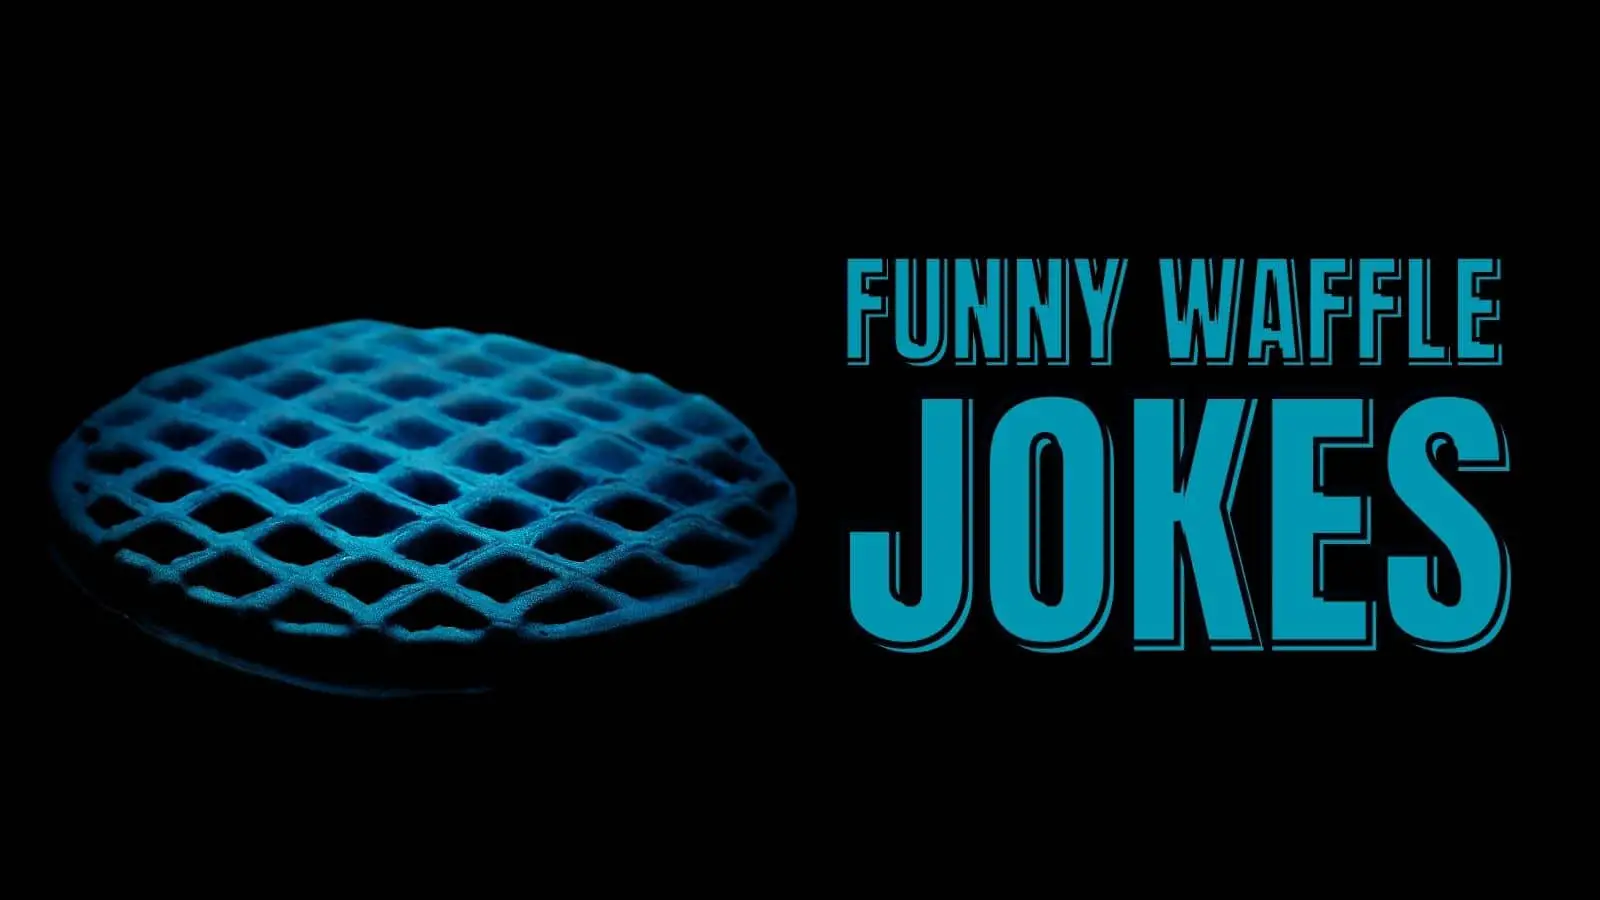 waffle house jokes funny